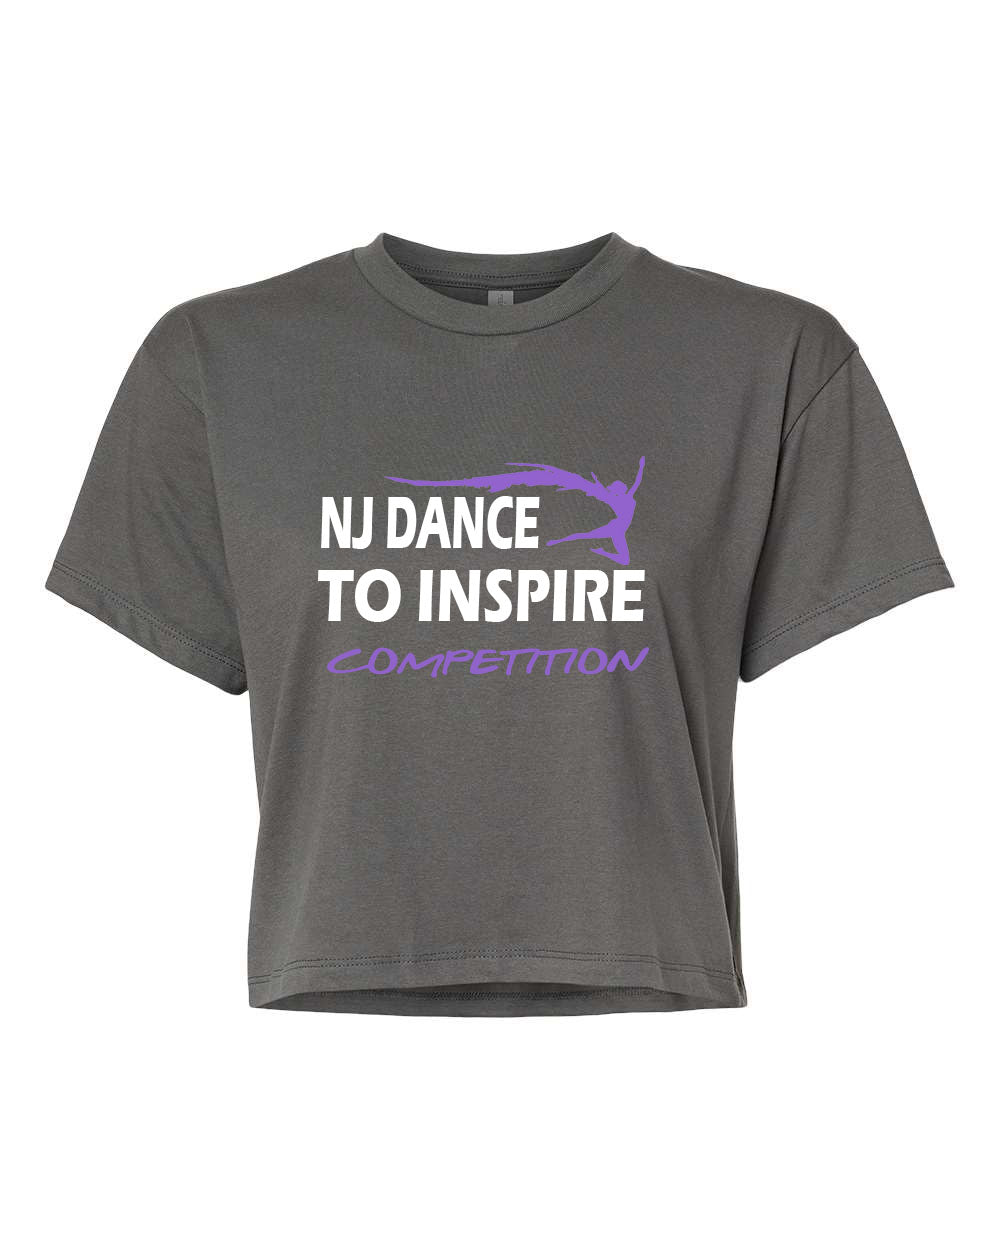 NJ Dance design 5 Crop Top